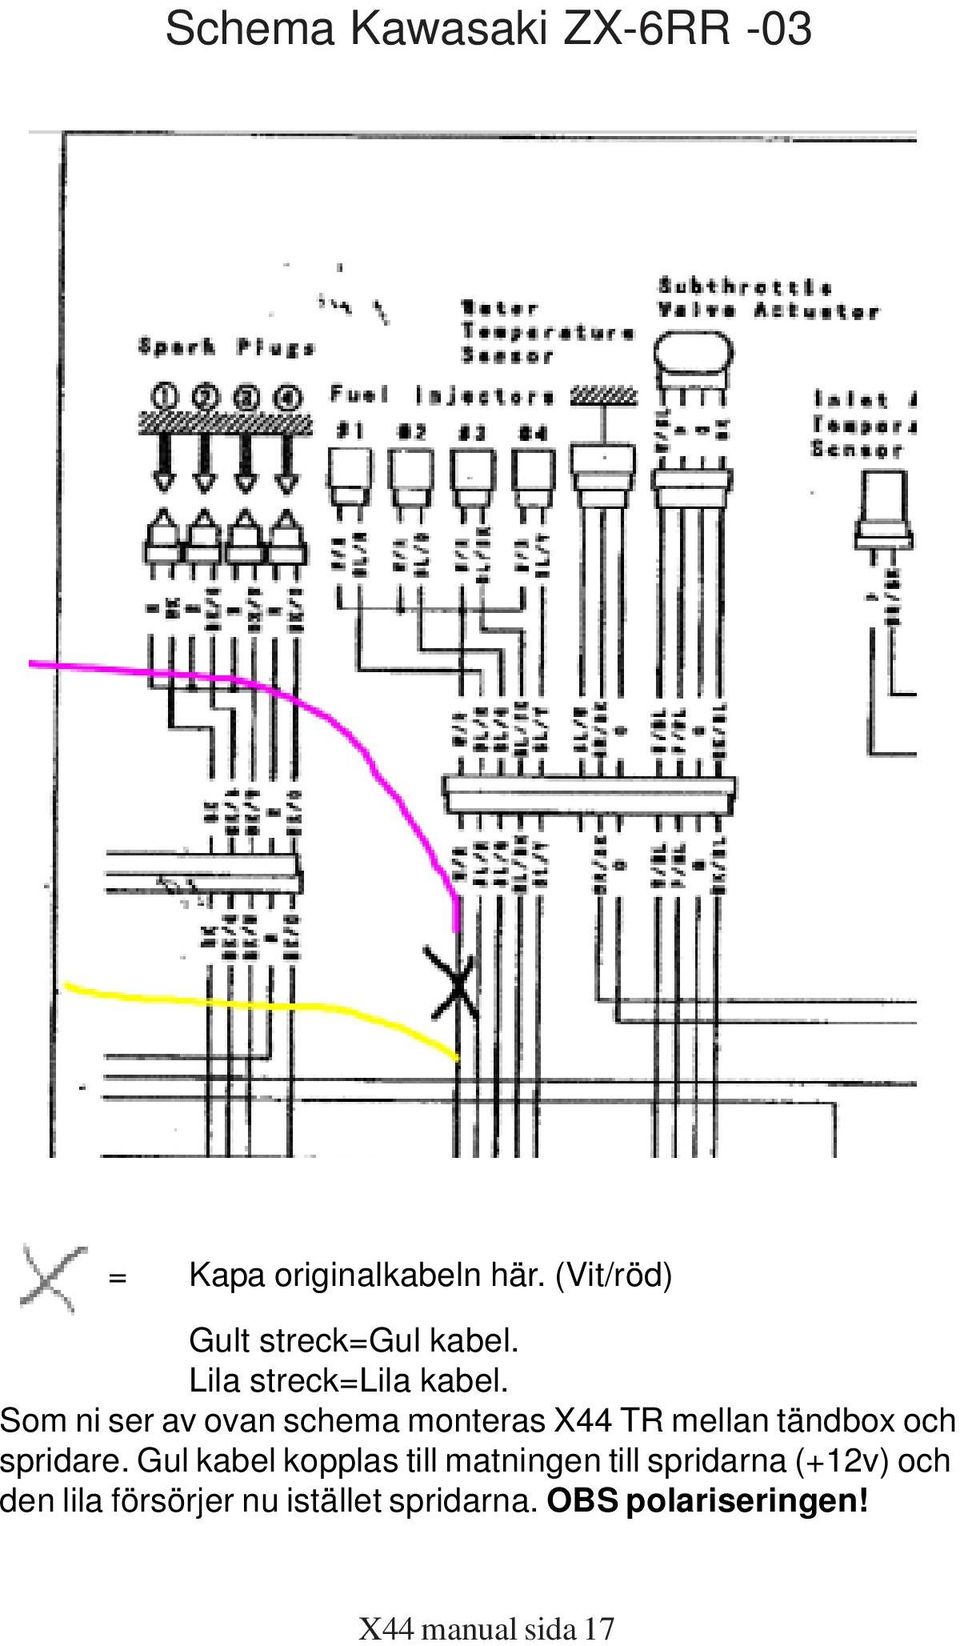 Som ni ser av ovan schema monteras X44 TR mellan tändbox och spridare.